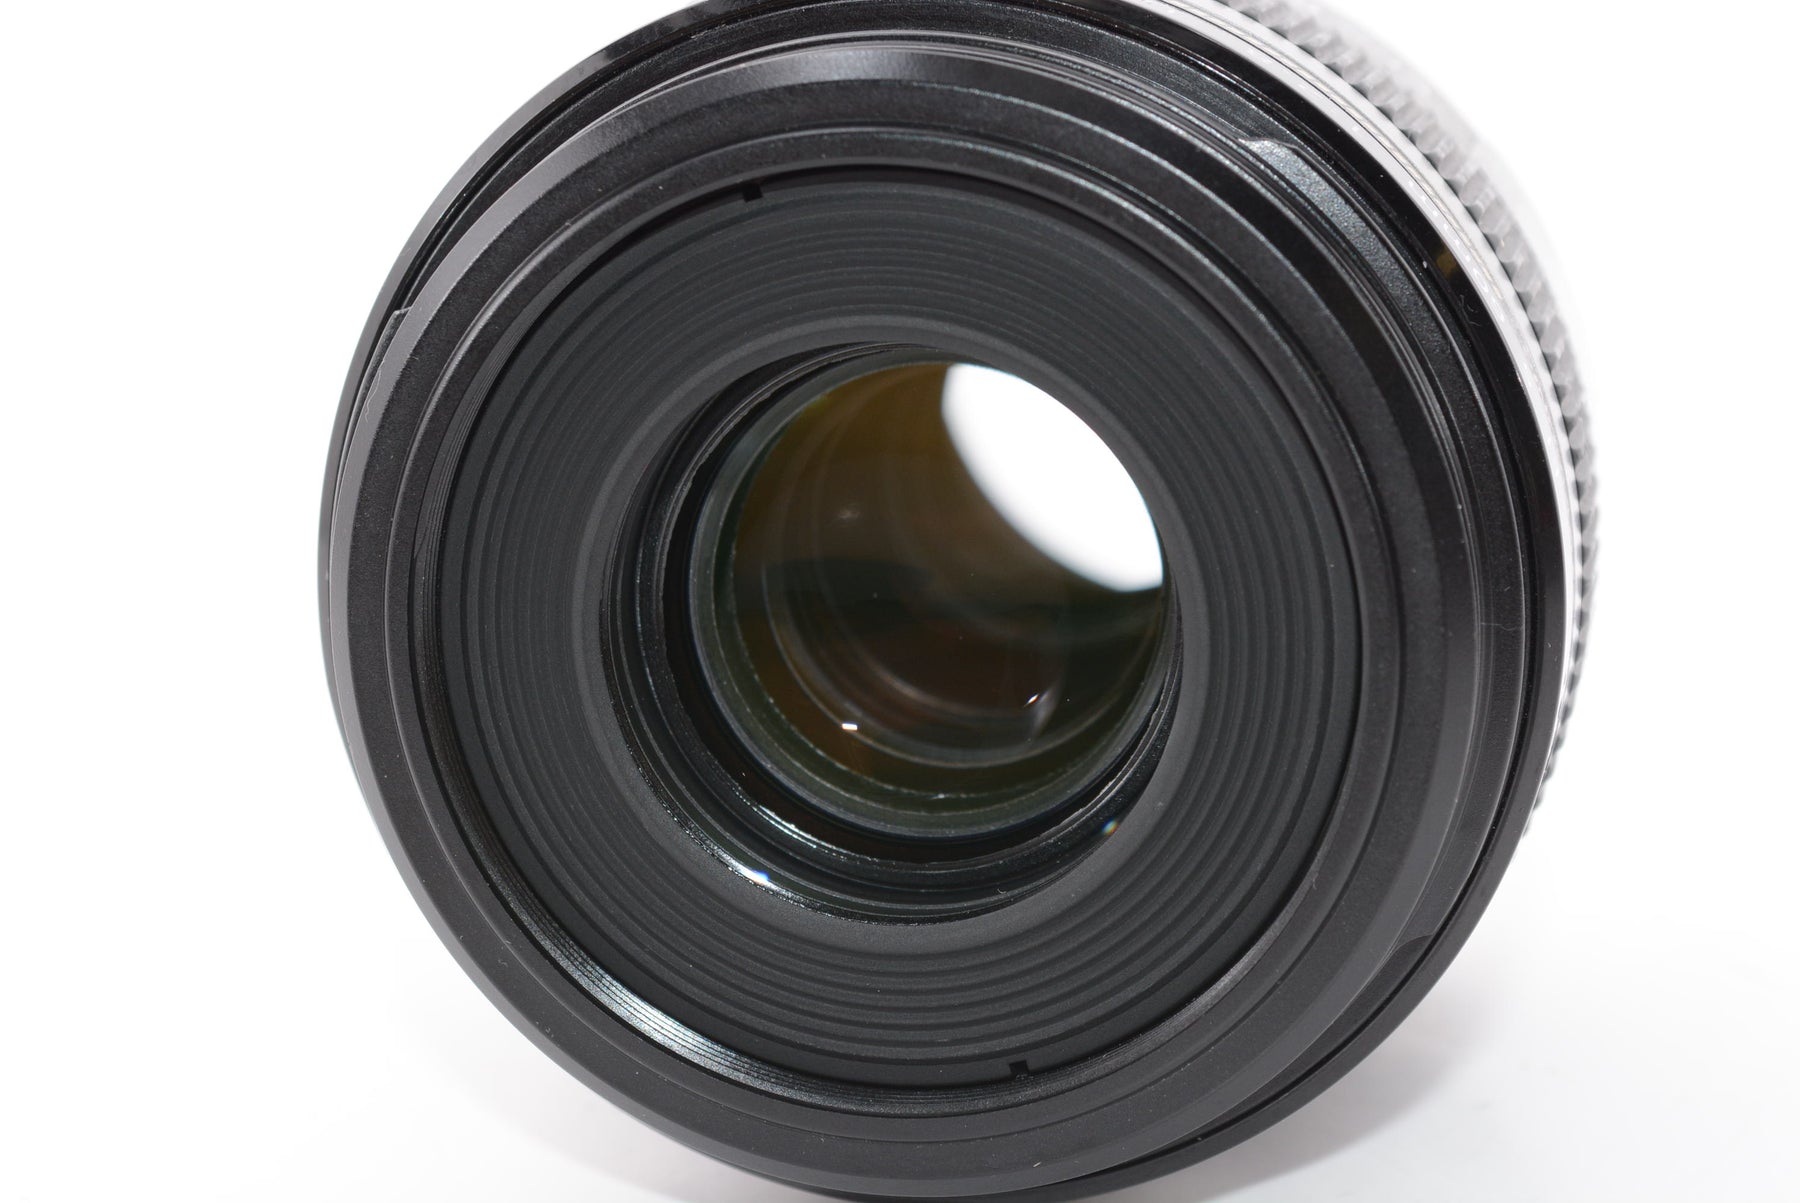 【外観特上級】Canon 単焦点マクロレンズ EF-S60mm F2.8マクロ USM APS-C対応